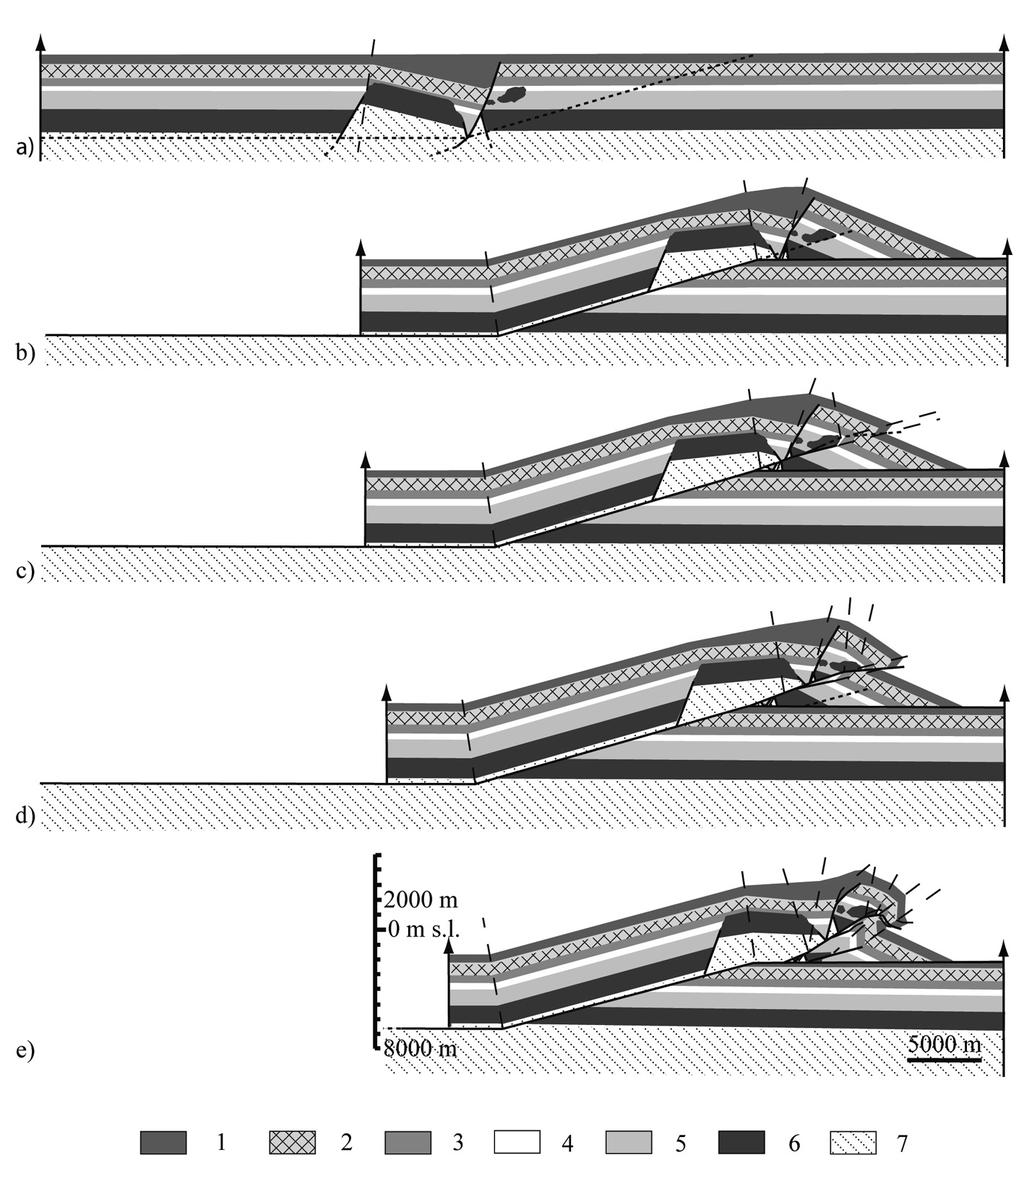 230 L. DI FRANCESCO, S. FABBI, M. SANTANTONIO, J. POBLET AND S. BIGI Figure 6. Forward model of the Montagna dei Fiori structure. See text for explanation. 1.